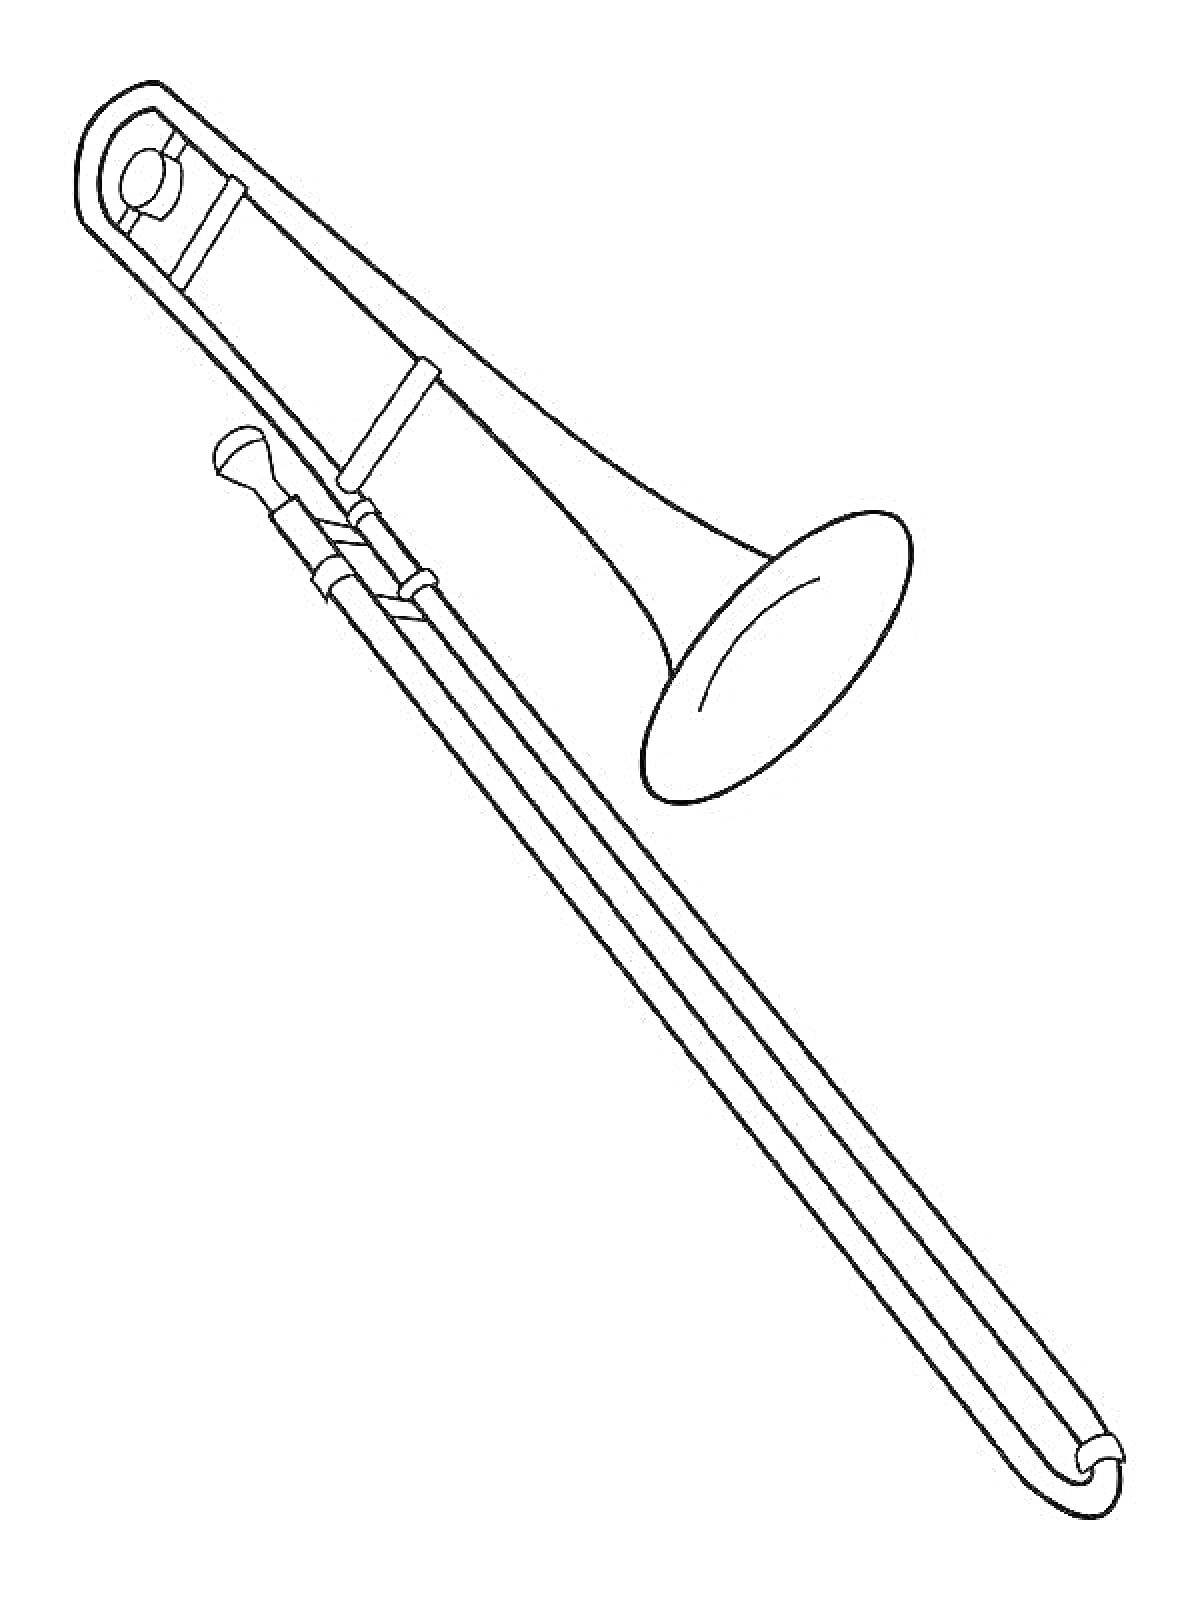 Тромбон